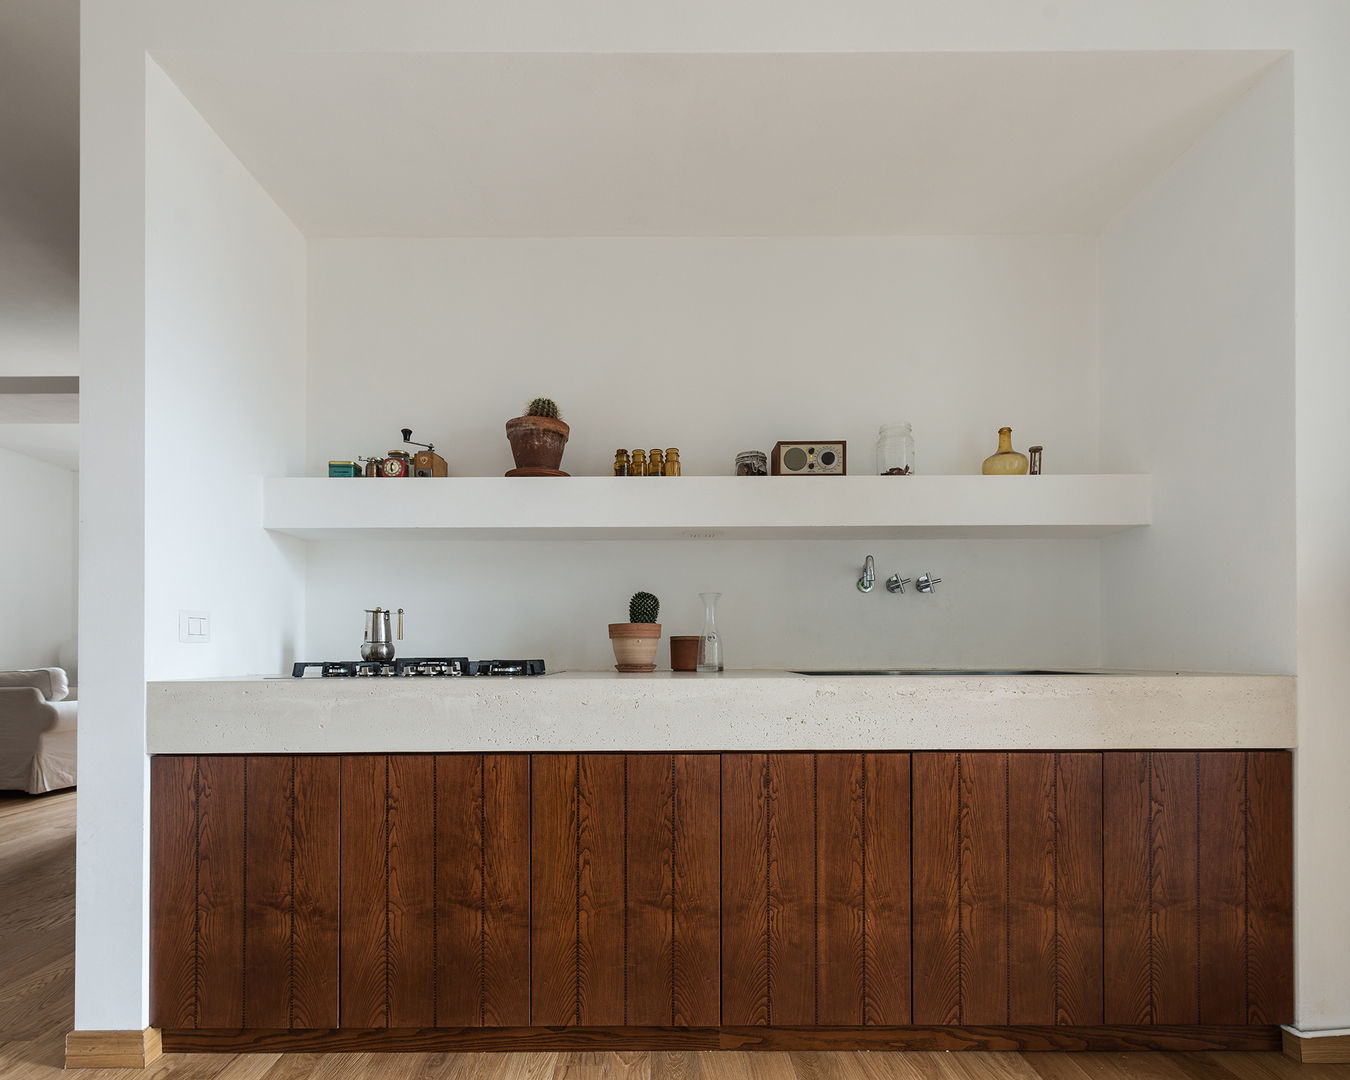 Woodboard House: Wohnungsrenovierung mit Charme, Atelier Blank Atelier Blank مطبخ